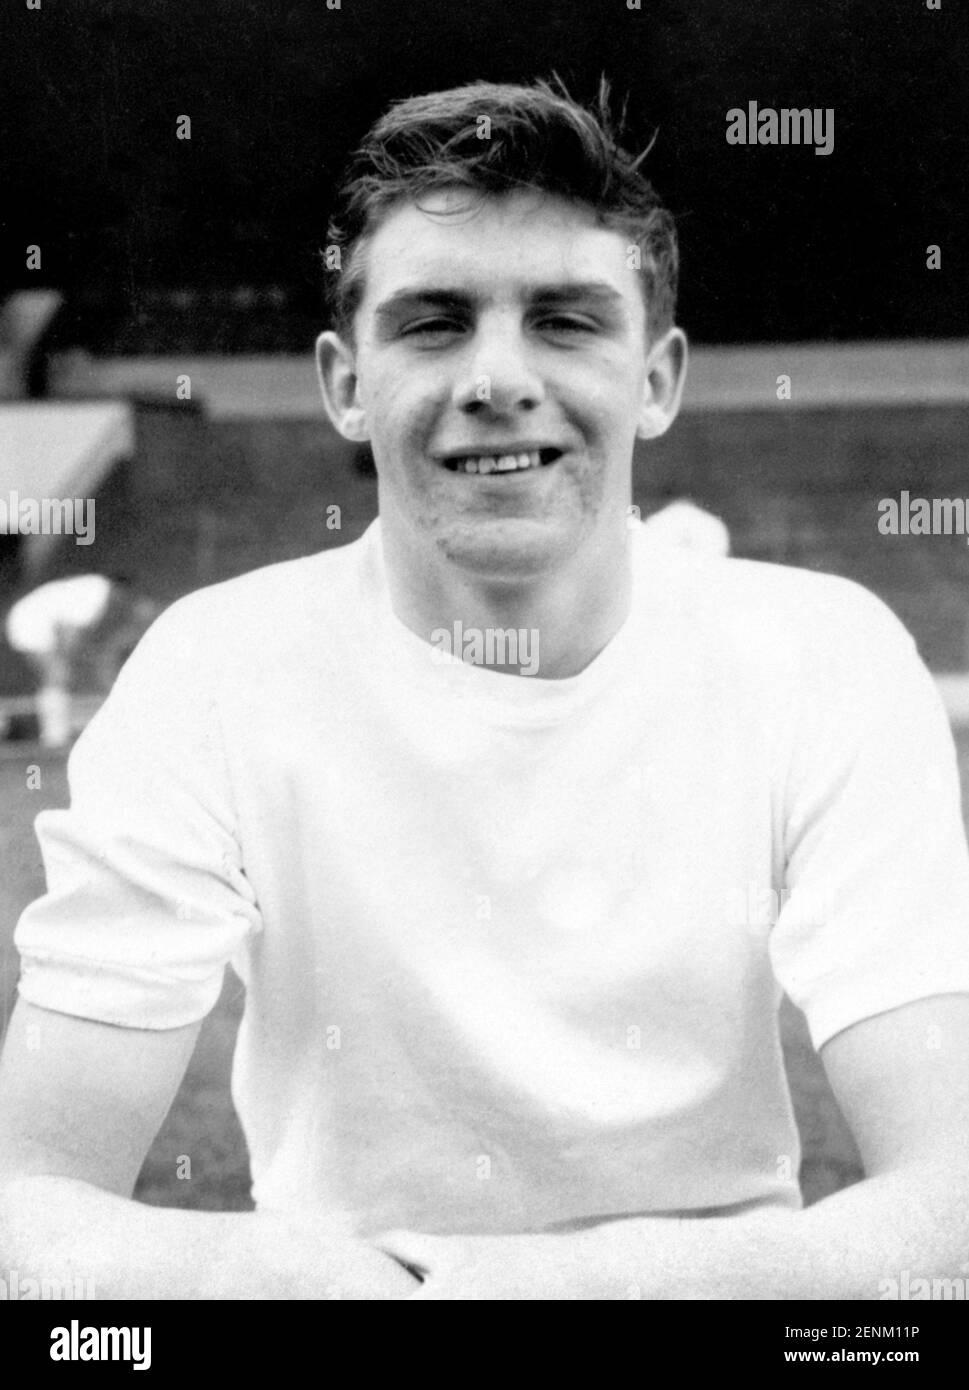 Foto de archivo fechada 12-09-1962 de Leeds United de 15 años de edad en el interior delantero, Peter Lorimer. Fecha de emisión: Viernes 26 de febrero de 2021. Foto de stock